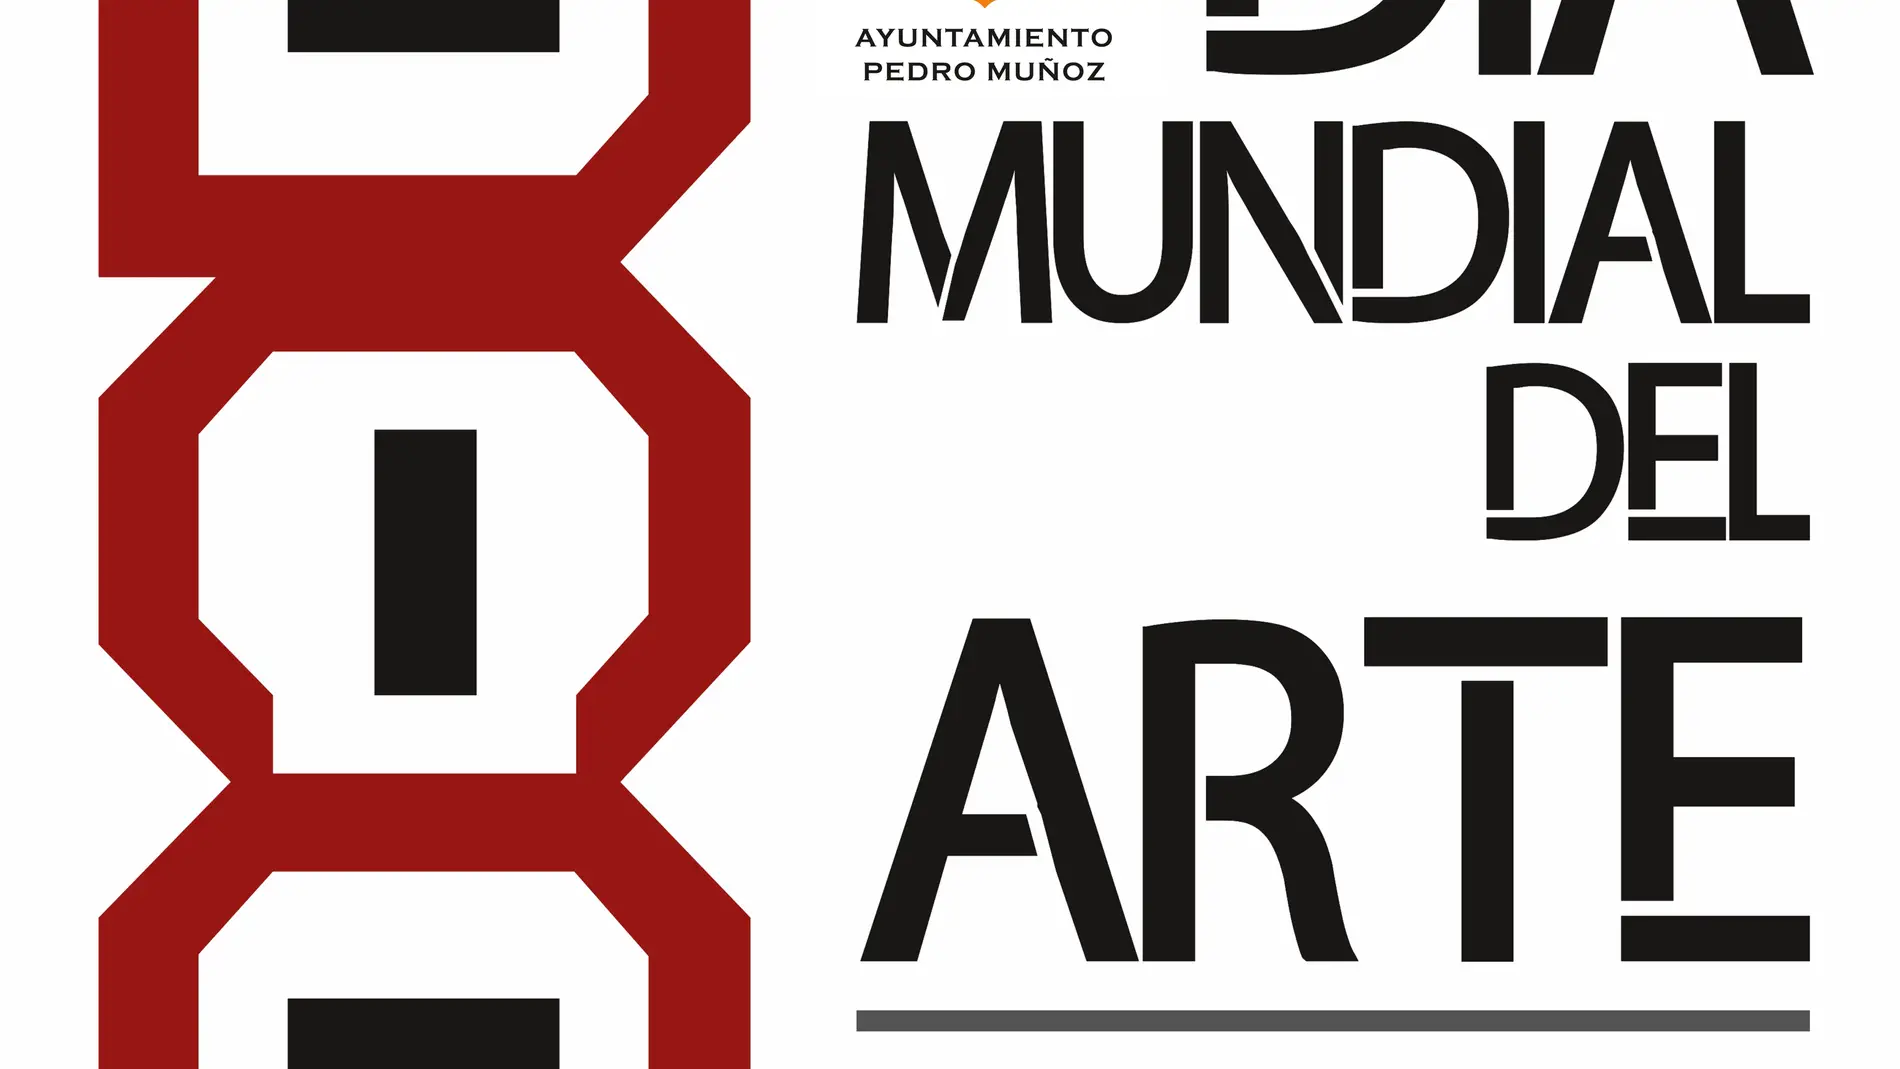 Pedro Muñoz celebra este jueves El Día Mundial del Arte